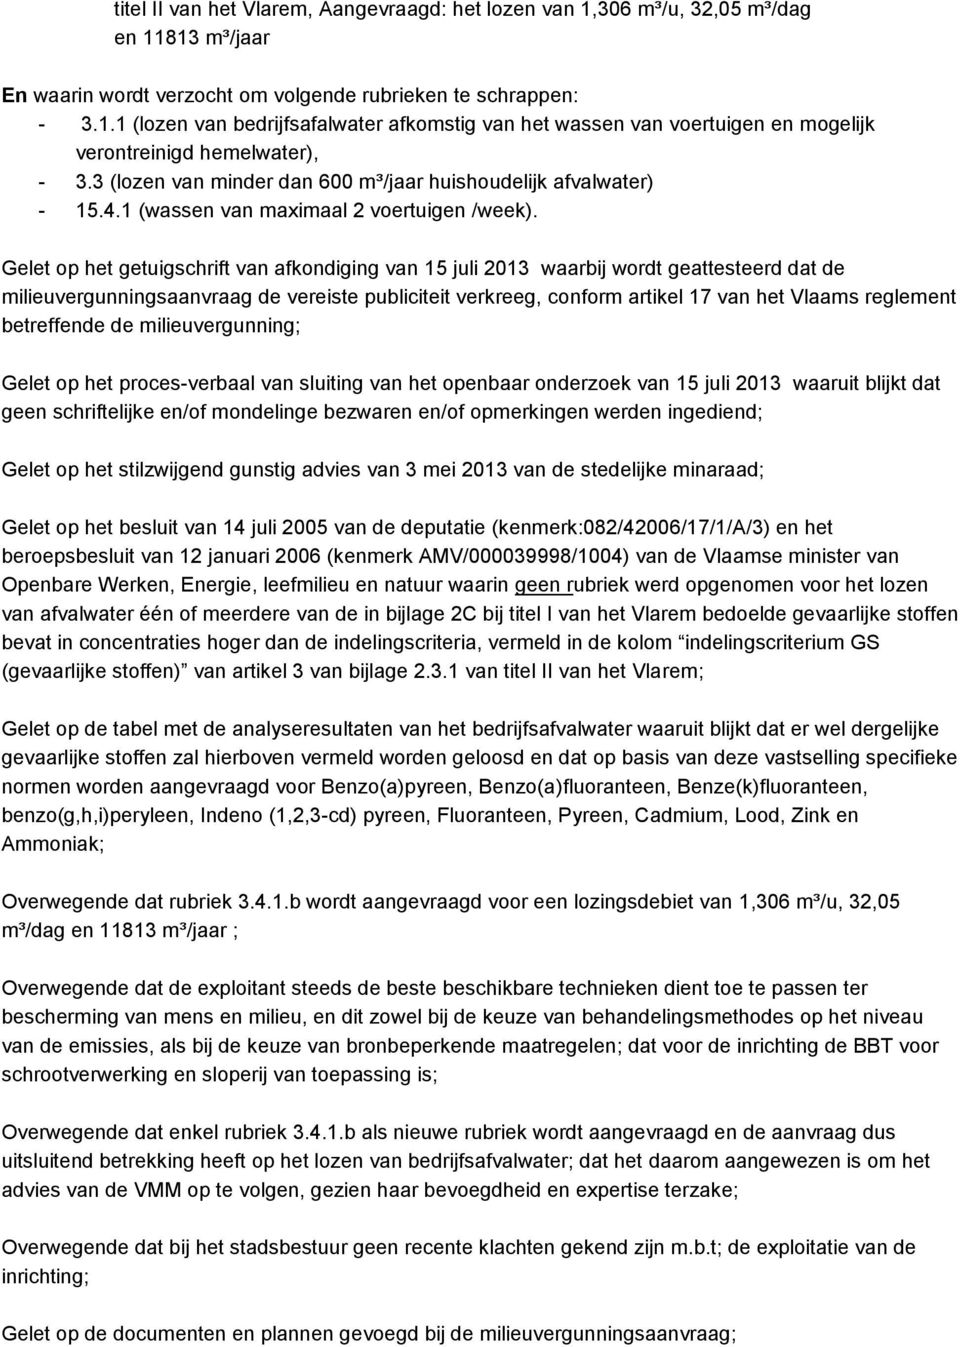 Gelet op het getuigschrift van afkondiging van 15 juli 2013 waarbij wordt geattesteerd dat de milieuvergunningsaanvraag de vereiste publiciteit verkreeg, conform artikel 17 van het Vlaams reglement